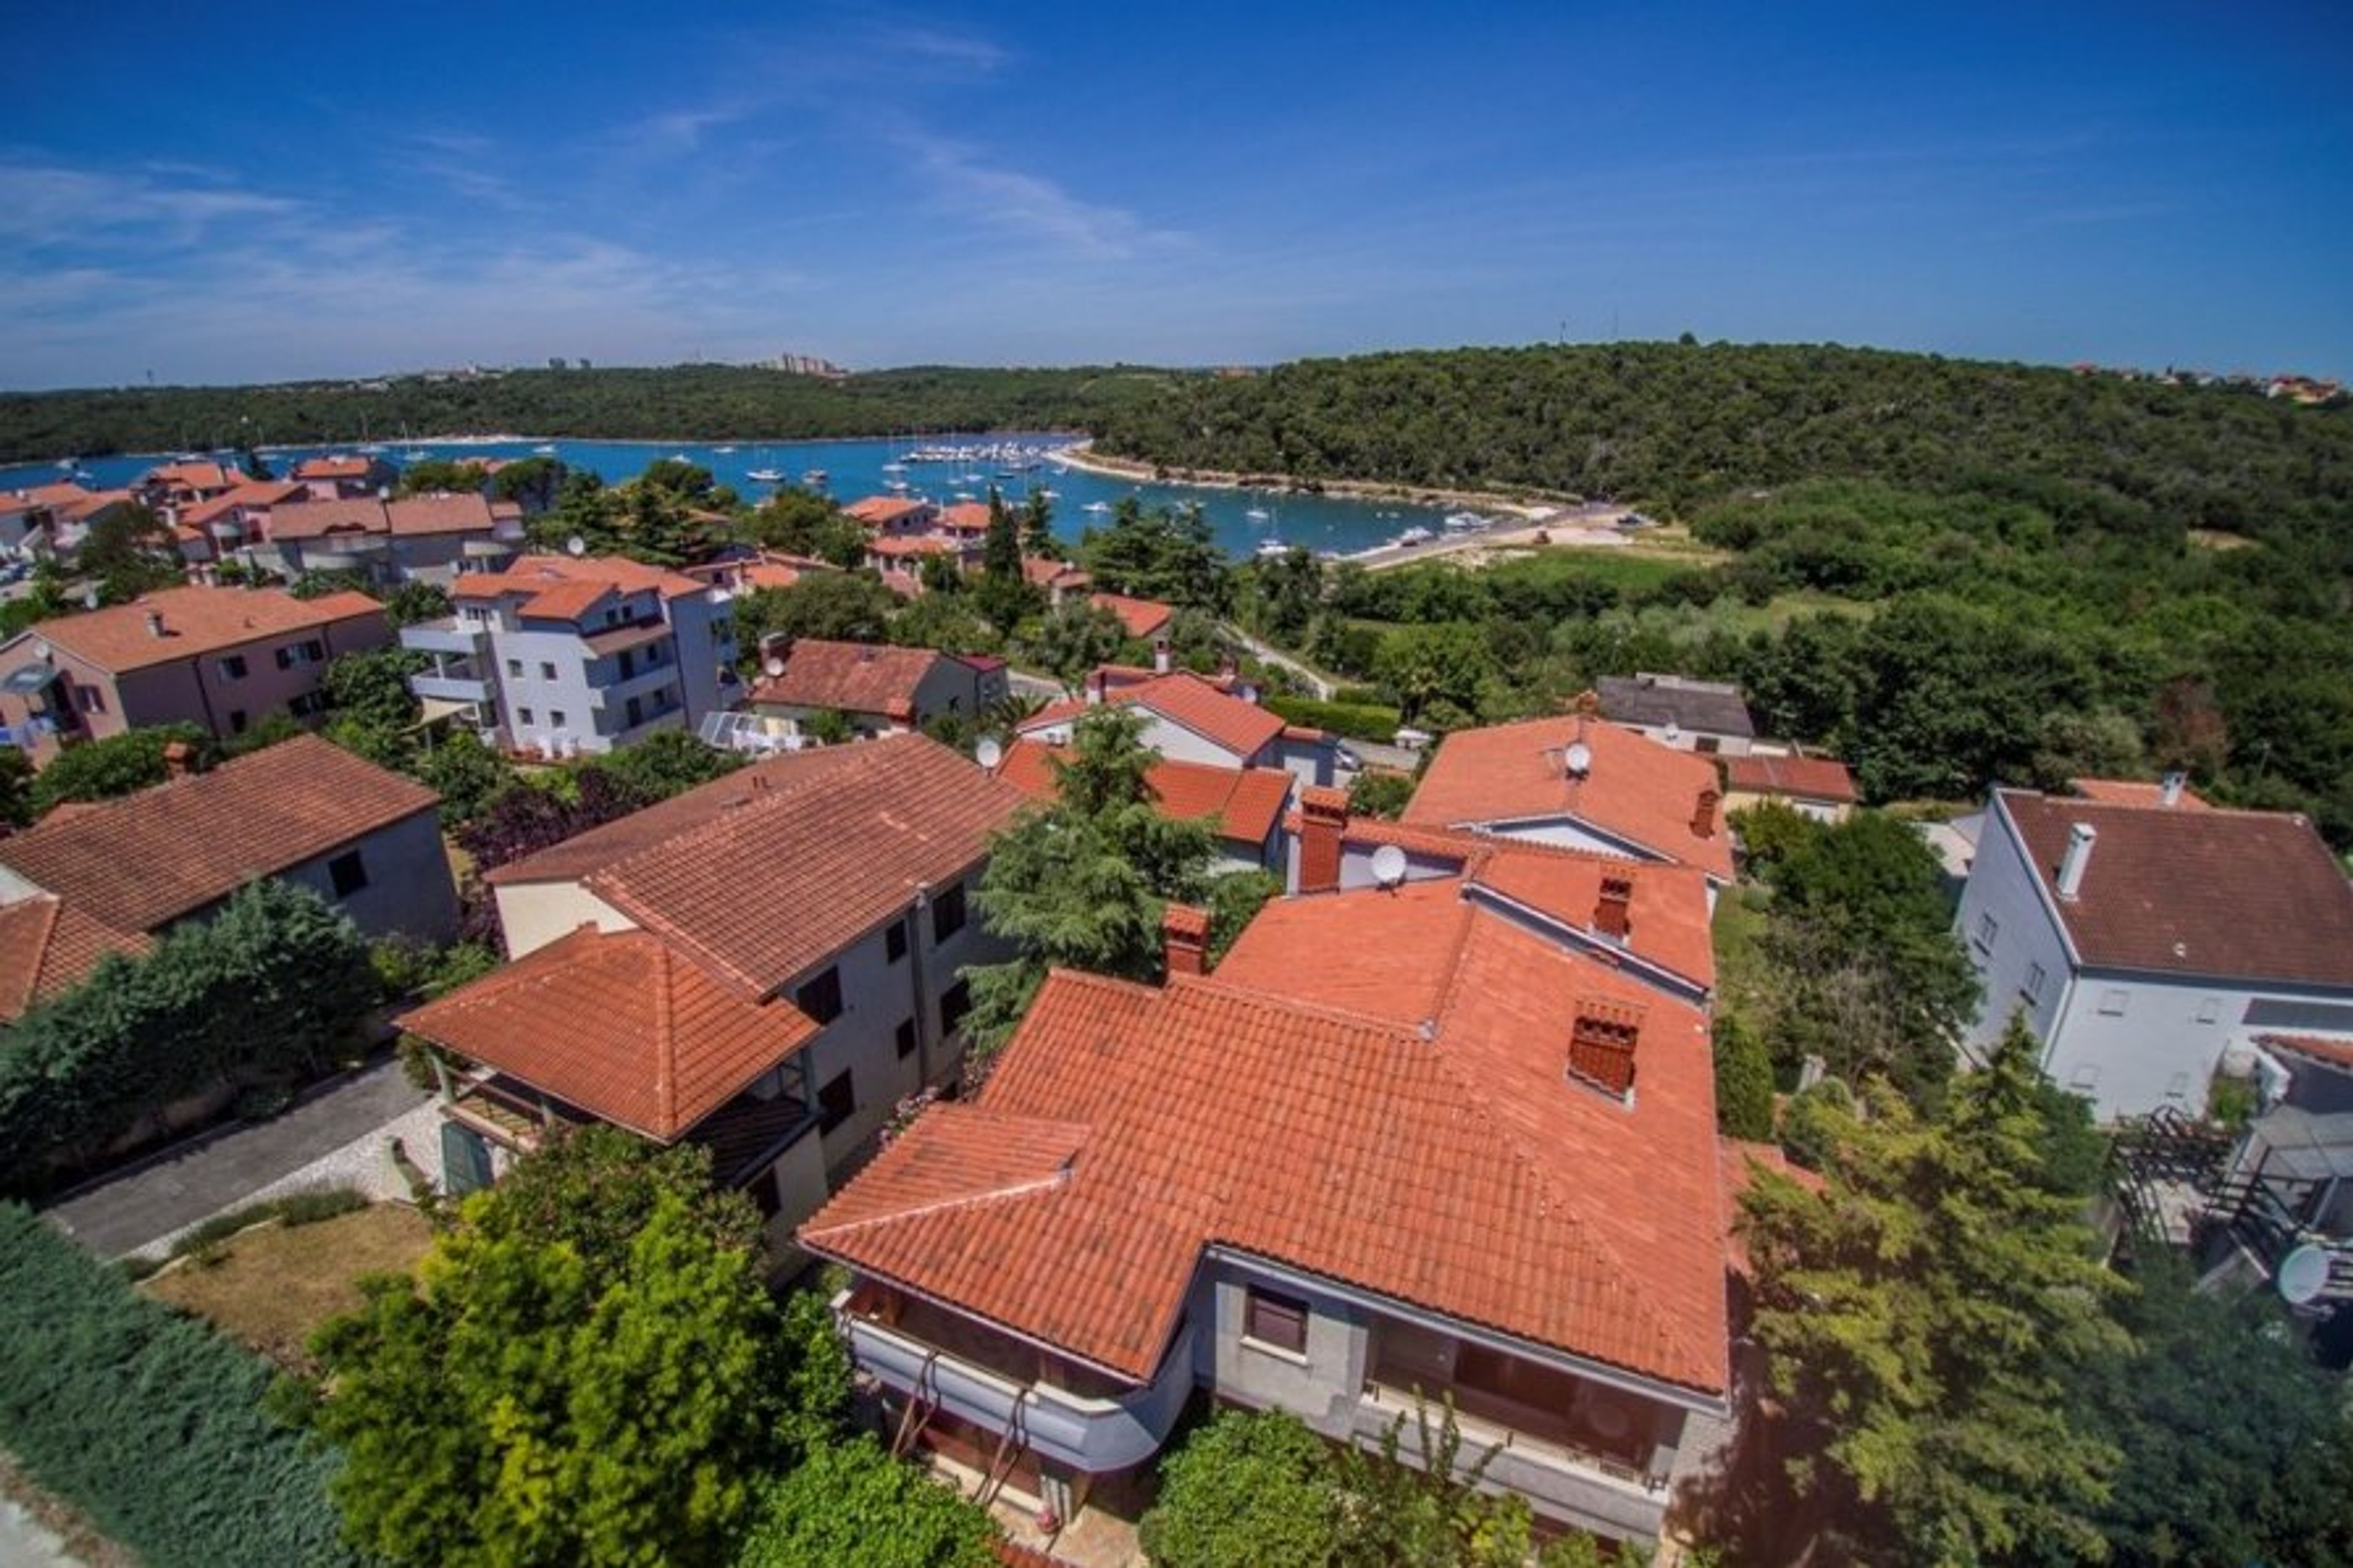 Villa MaVeRo panorama
150 m fare from the beach/ sea view time to book